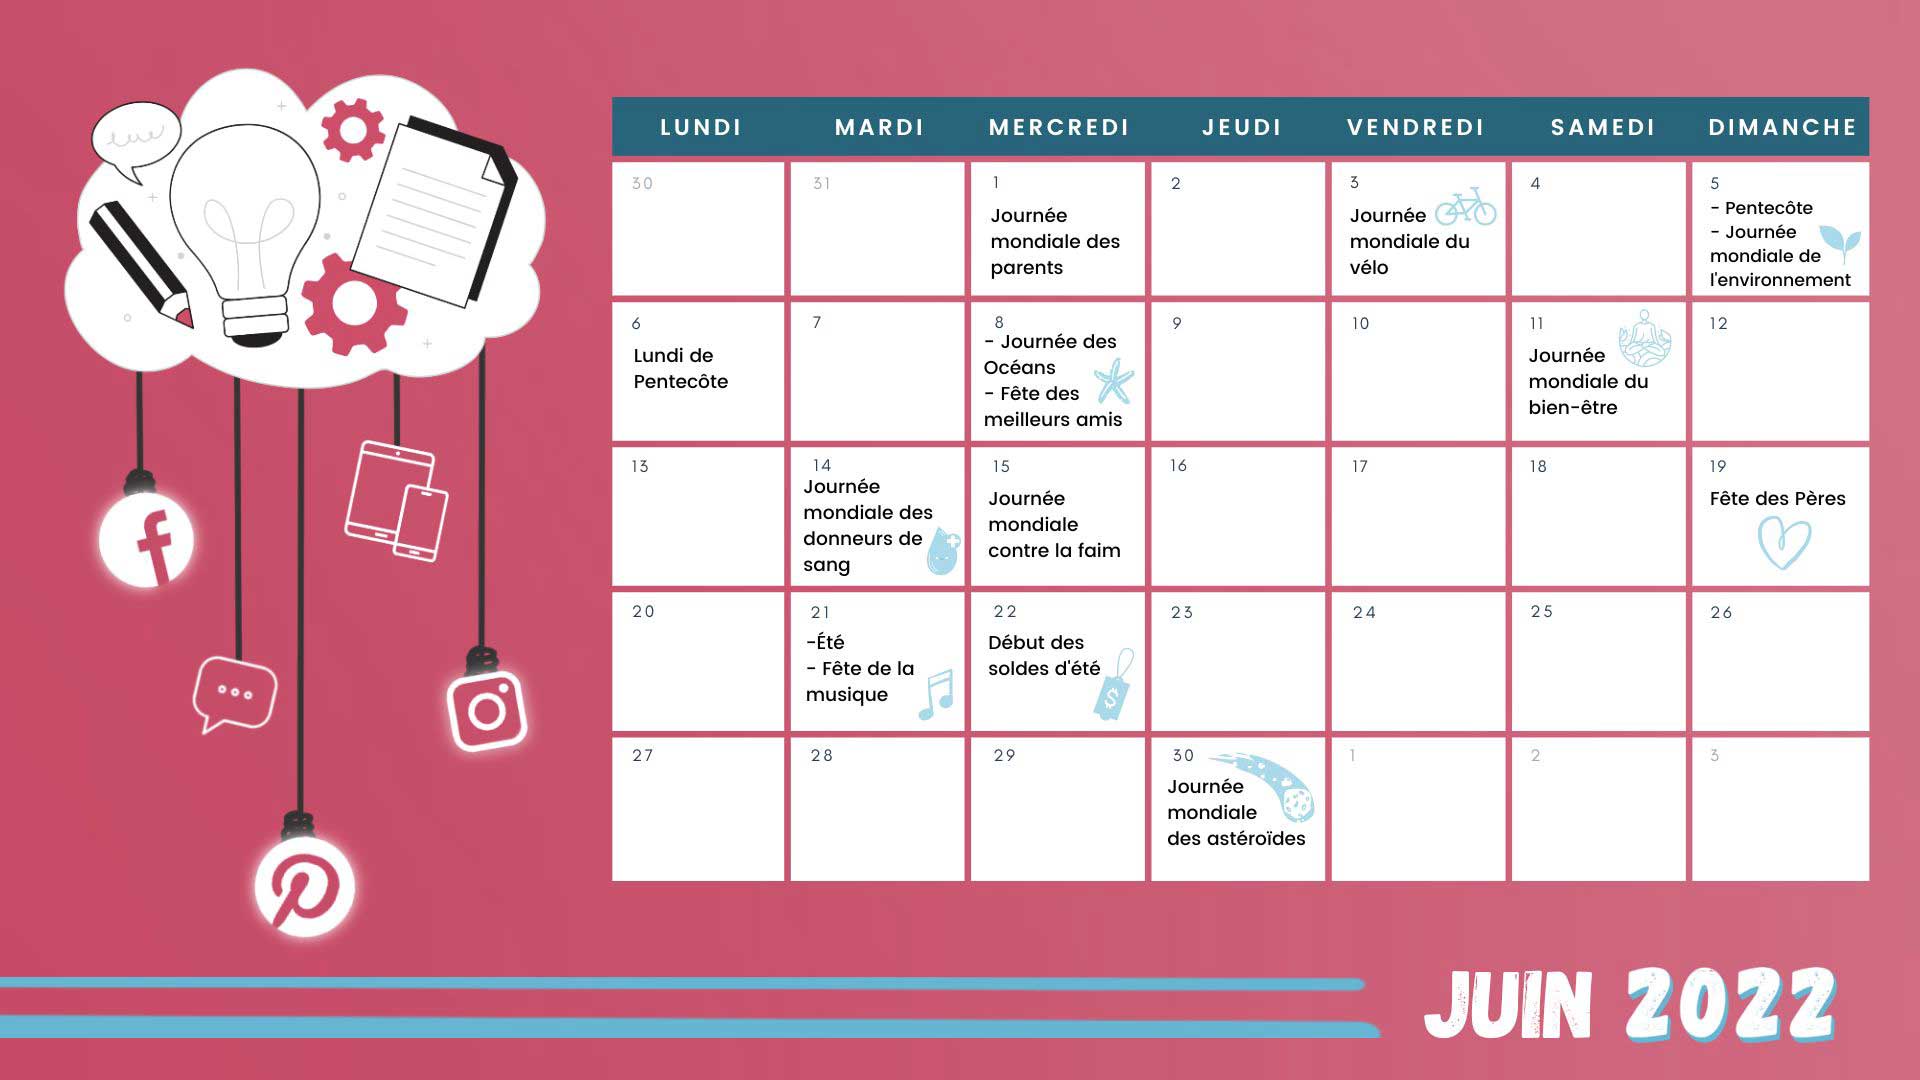 Retrouvez tous les événements du mois de juin grâce à votre calendrier marronnier juin 2022 !